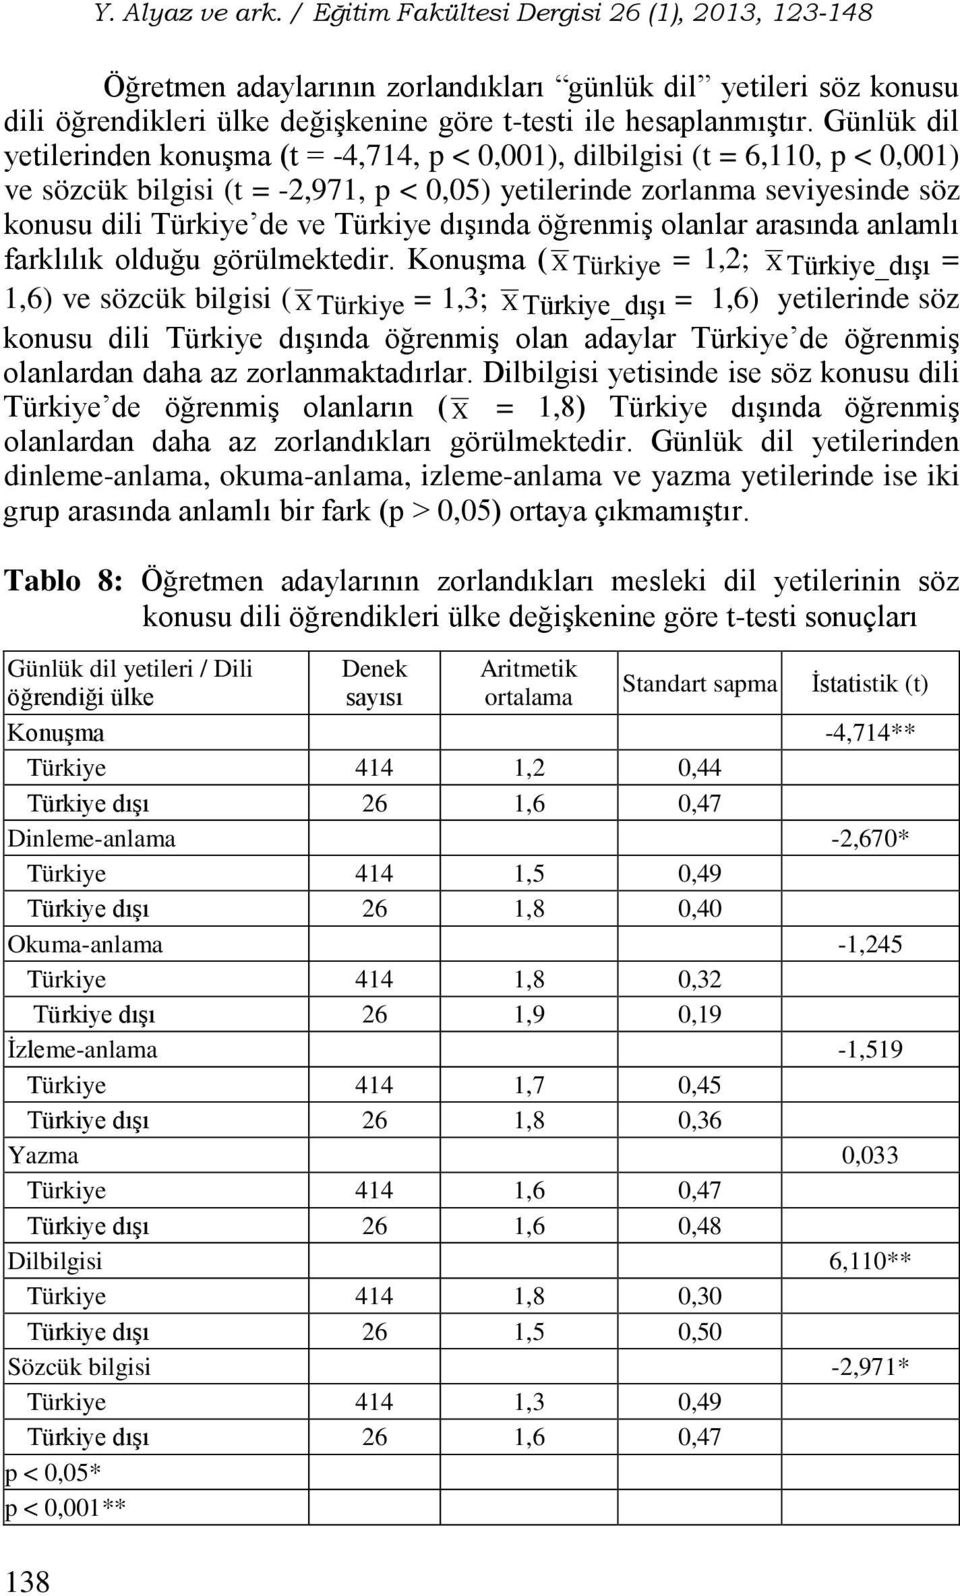 Günlük dil yetilerinden konuşma (t = -4,714, p < 0,001), dilbilgisi (t = 6,110, p < 0,001) ve sözcük bilgisi (t = -2,971, p < 0,05) yetilerinde zorlanma seviyesinde söz konusu dili Türkiye de ve